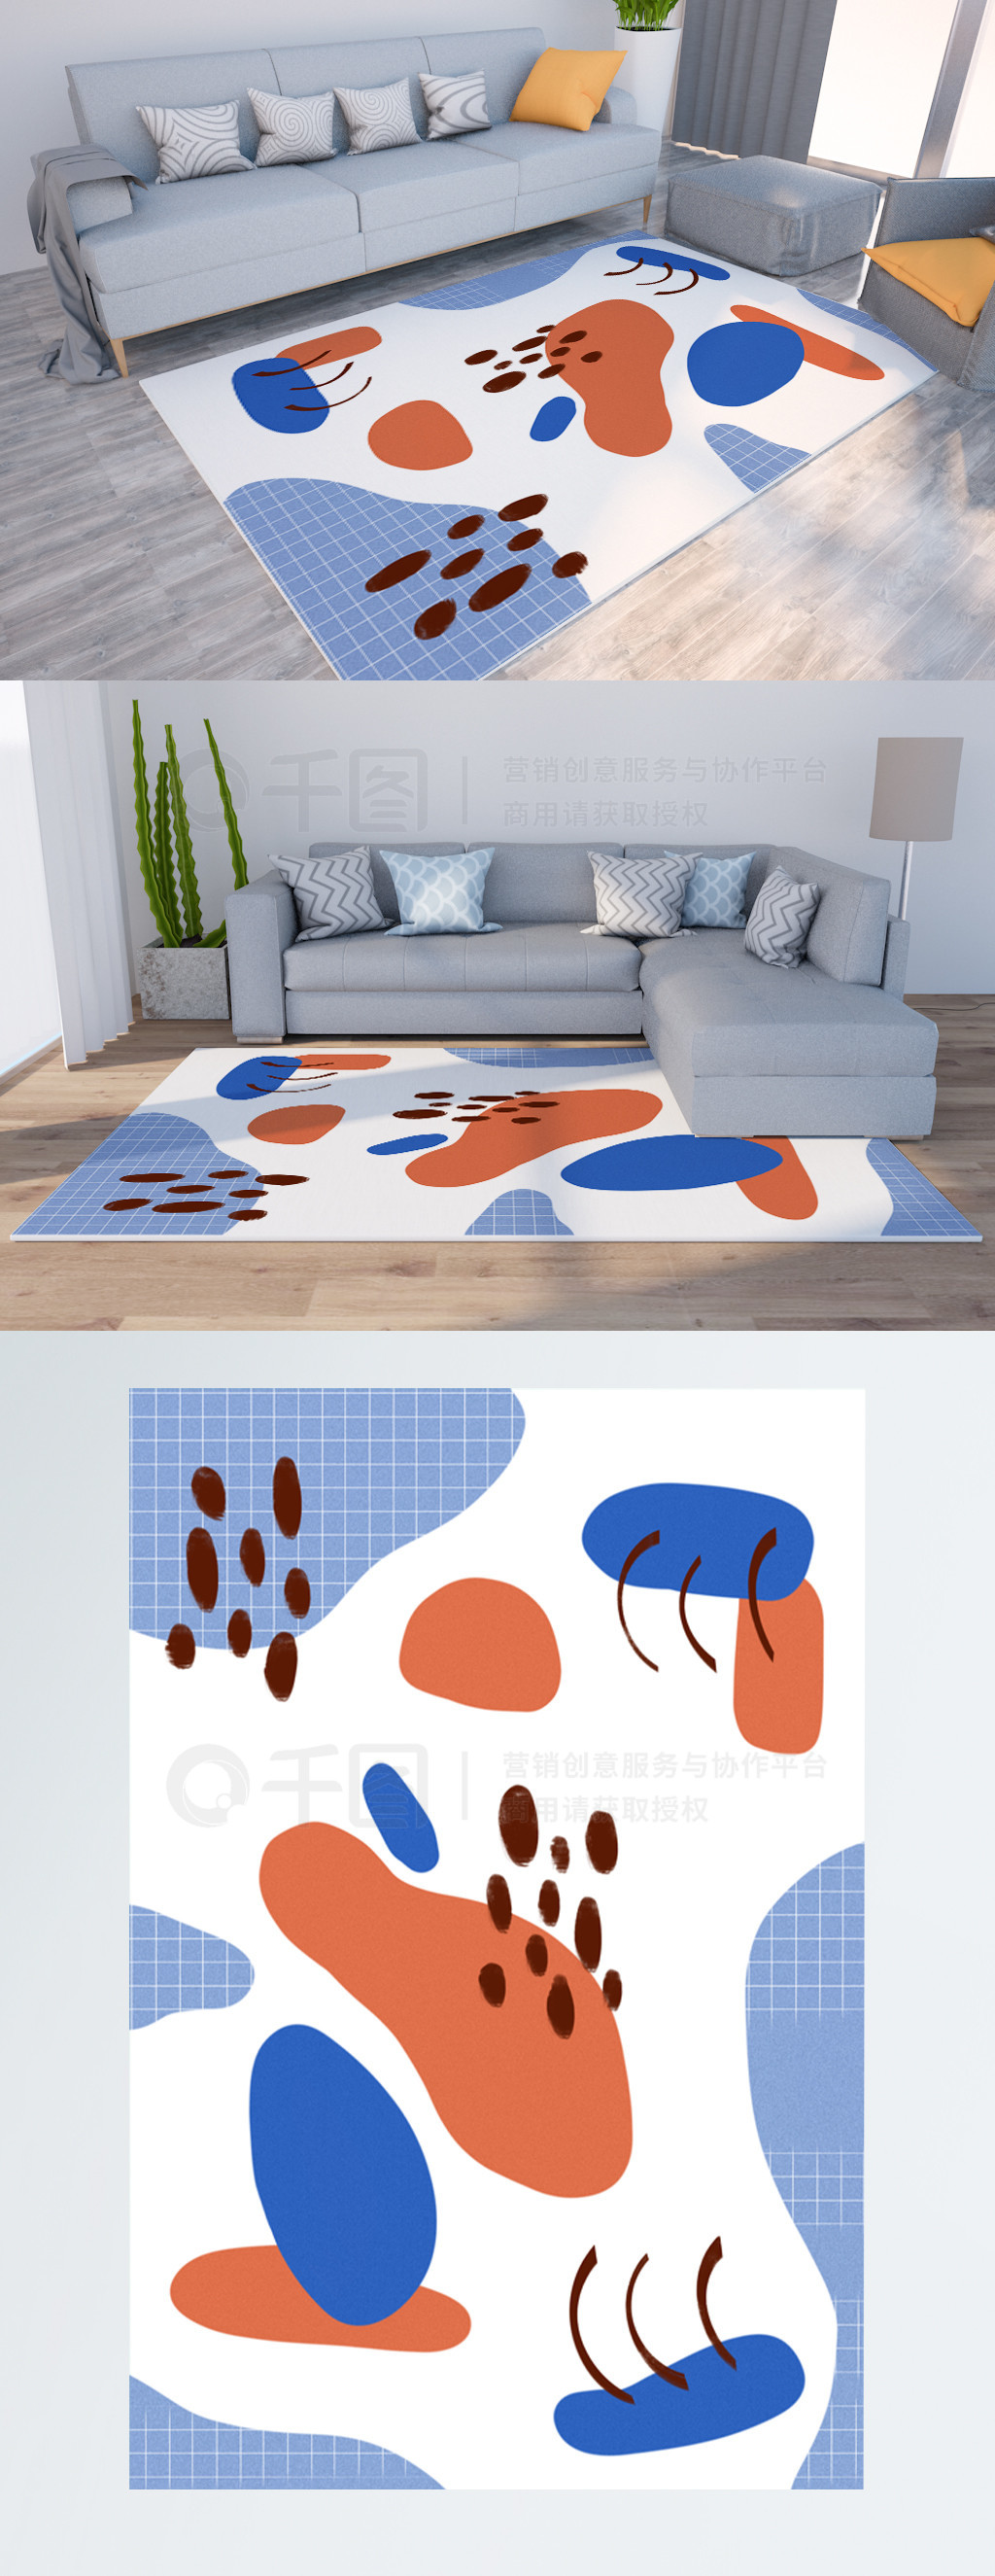 原创简约大色块几何拼贴创意地毯地垫设计图免费下载_8504像素_psd格式_编号35957954